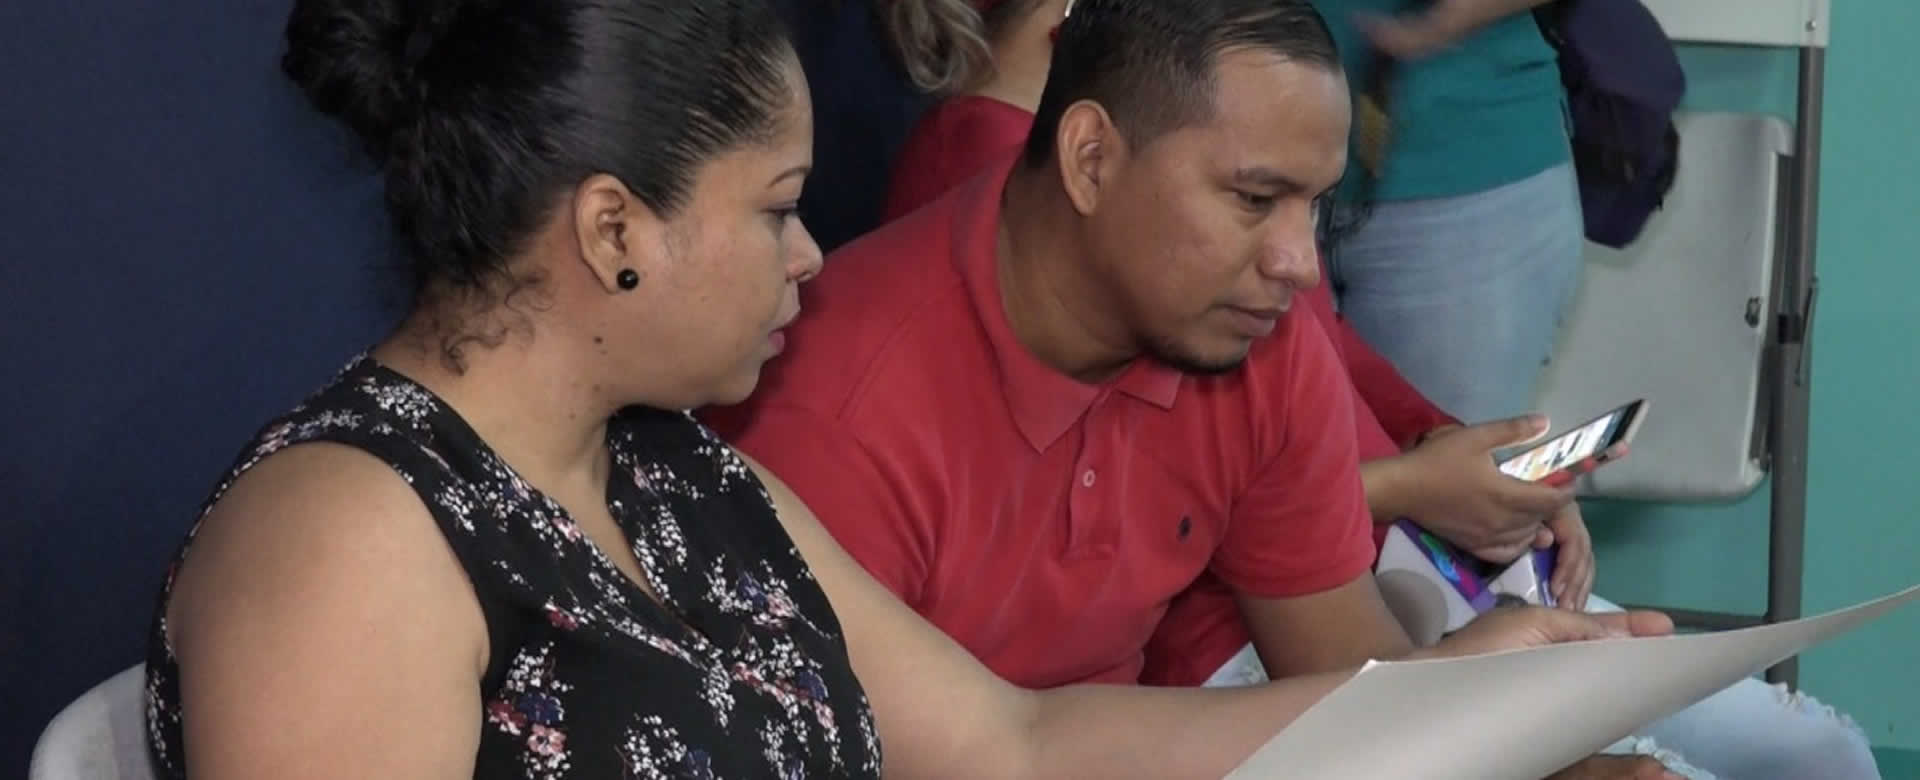 SILAIS Managua capacita a médicos y enfermeras del programa Amor para los más Chiquitos